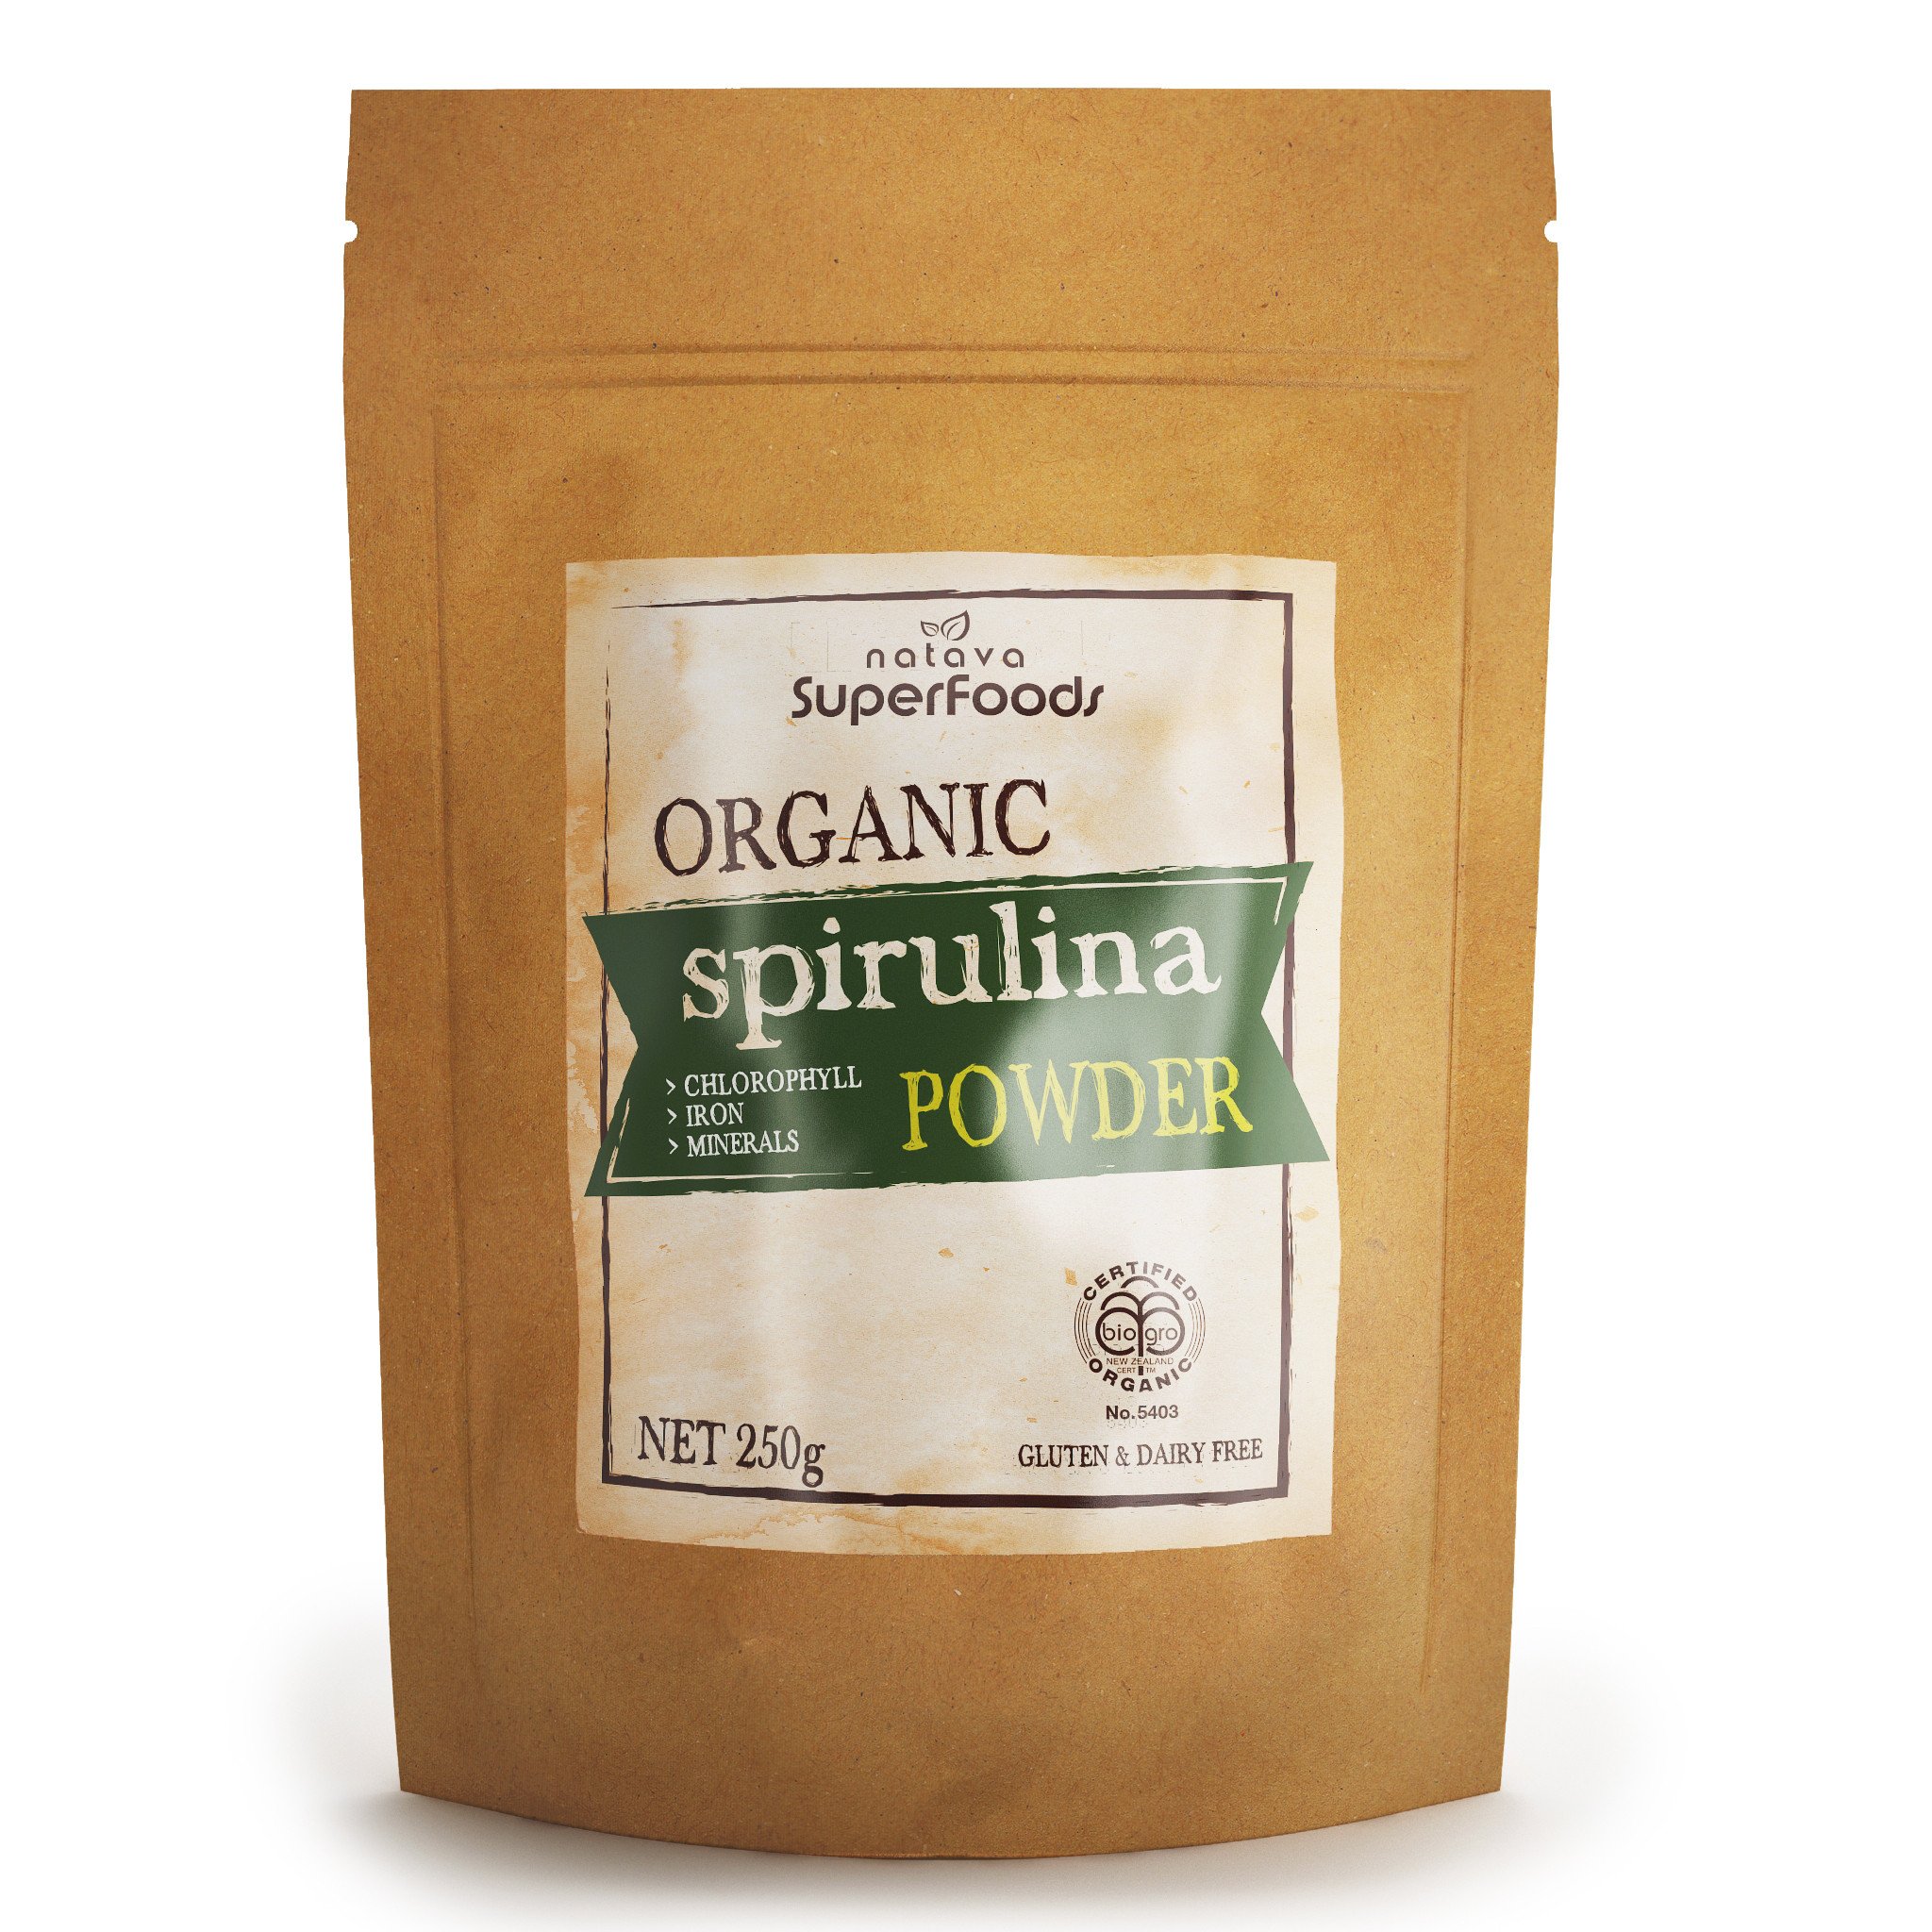 Natava Superfoods - Organic Spirulina Powder 